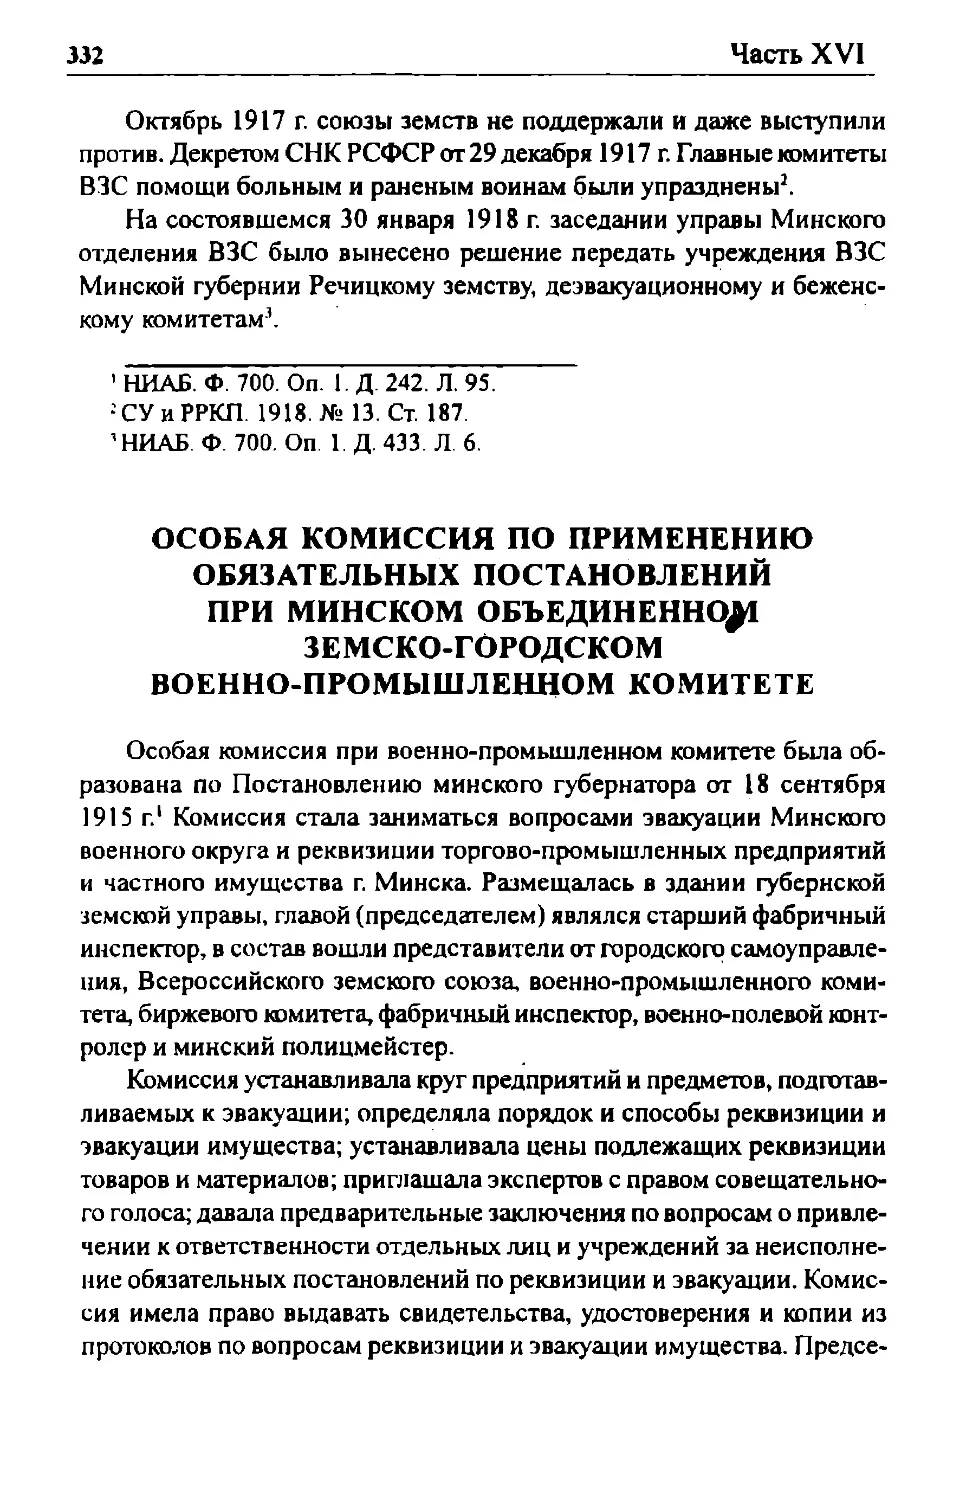 Особая комиссия по применению обязательных постановлений при Минском объединенном земско-городском военно-промышленном комитете